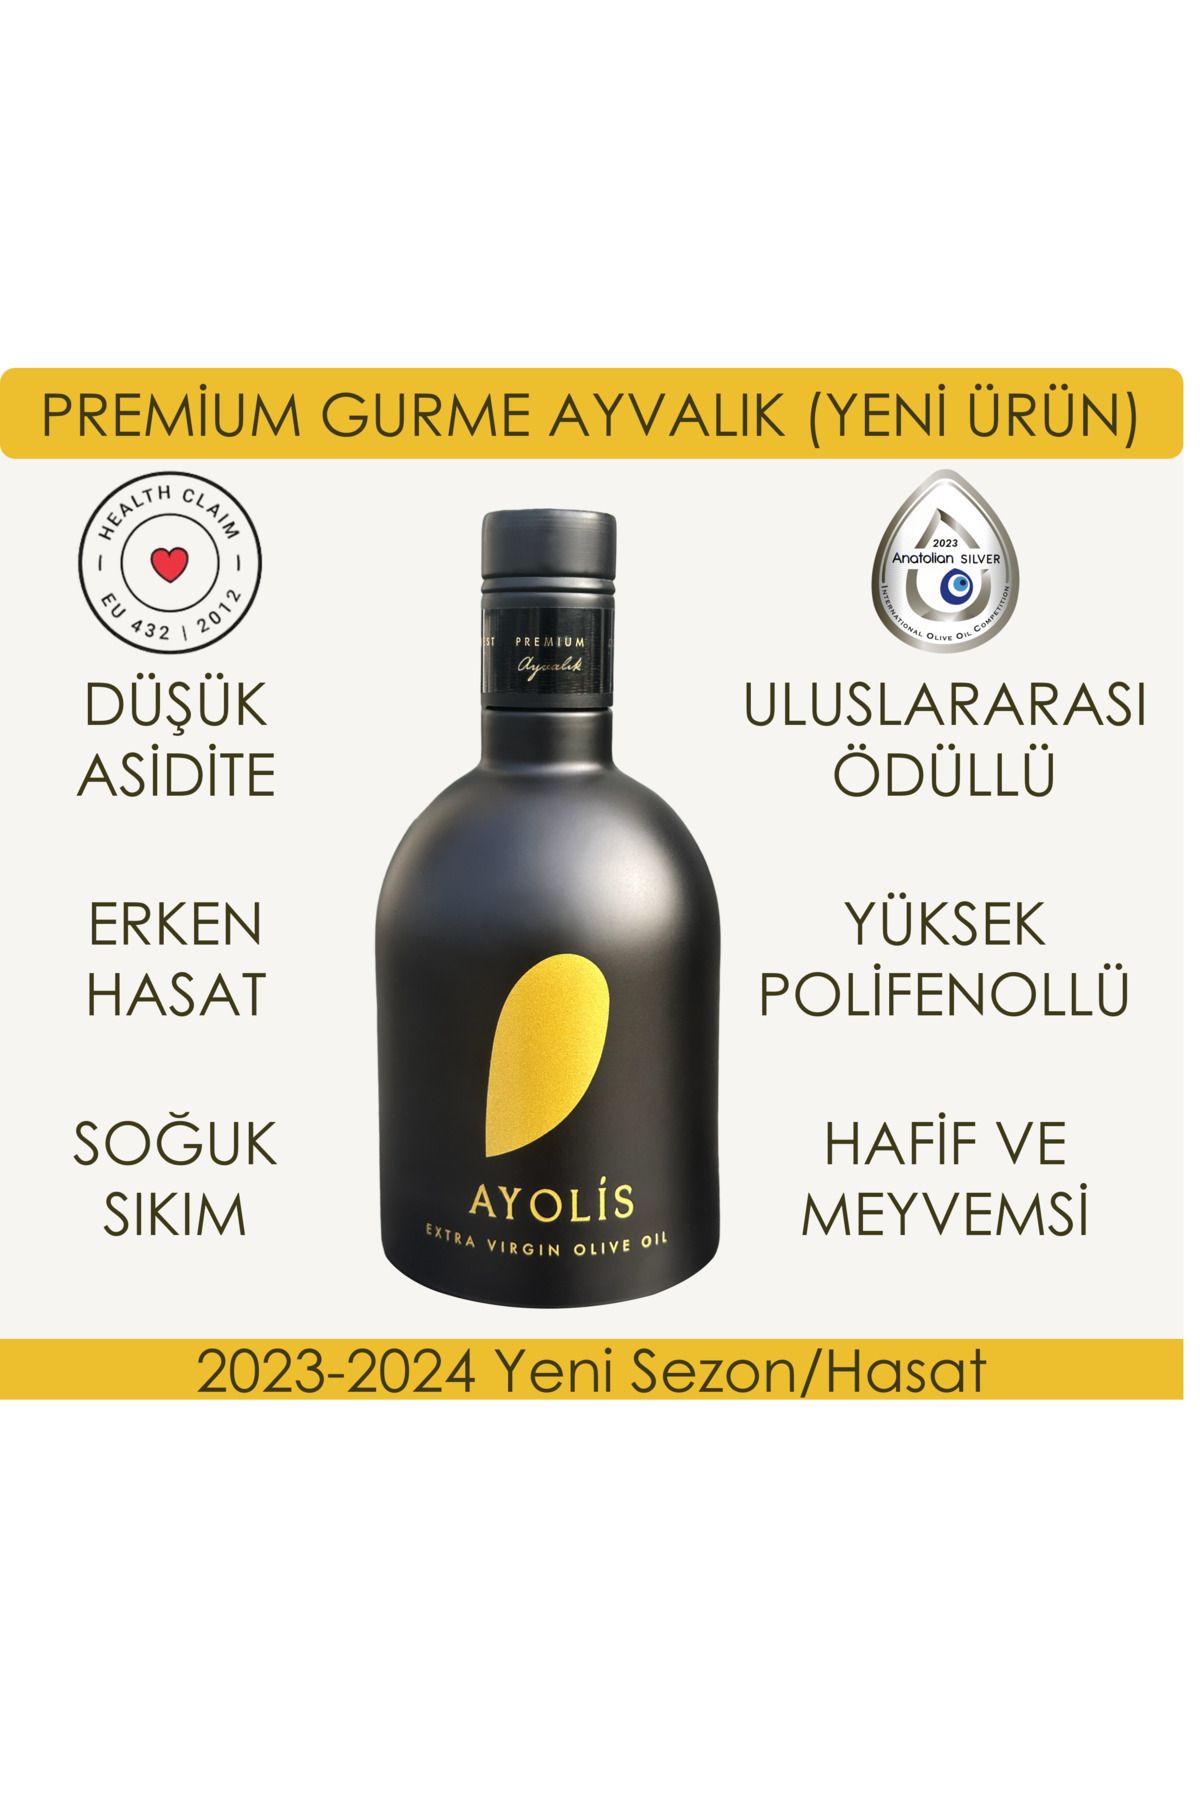 Ayolis Premium Gurme Ayvalık 500 Ml Yüksek Polifenollü Erken Hasat Soğuk Sıkım Natürel Sızma Zeytinyağı